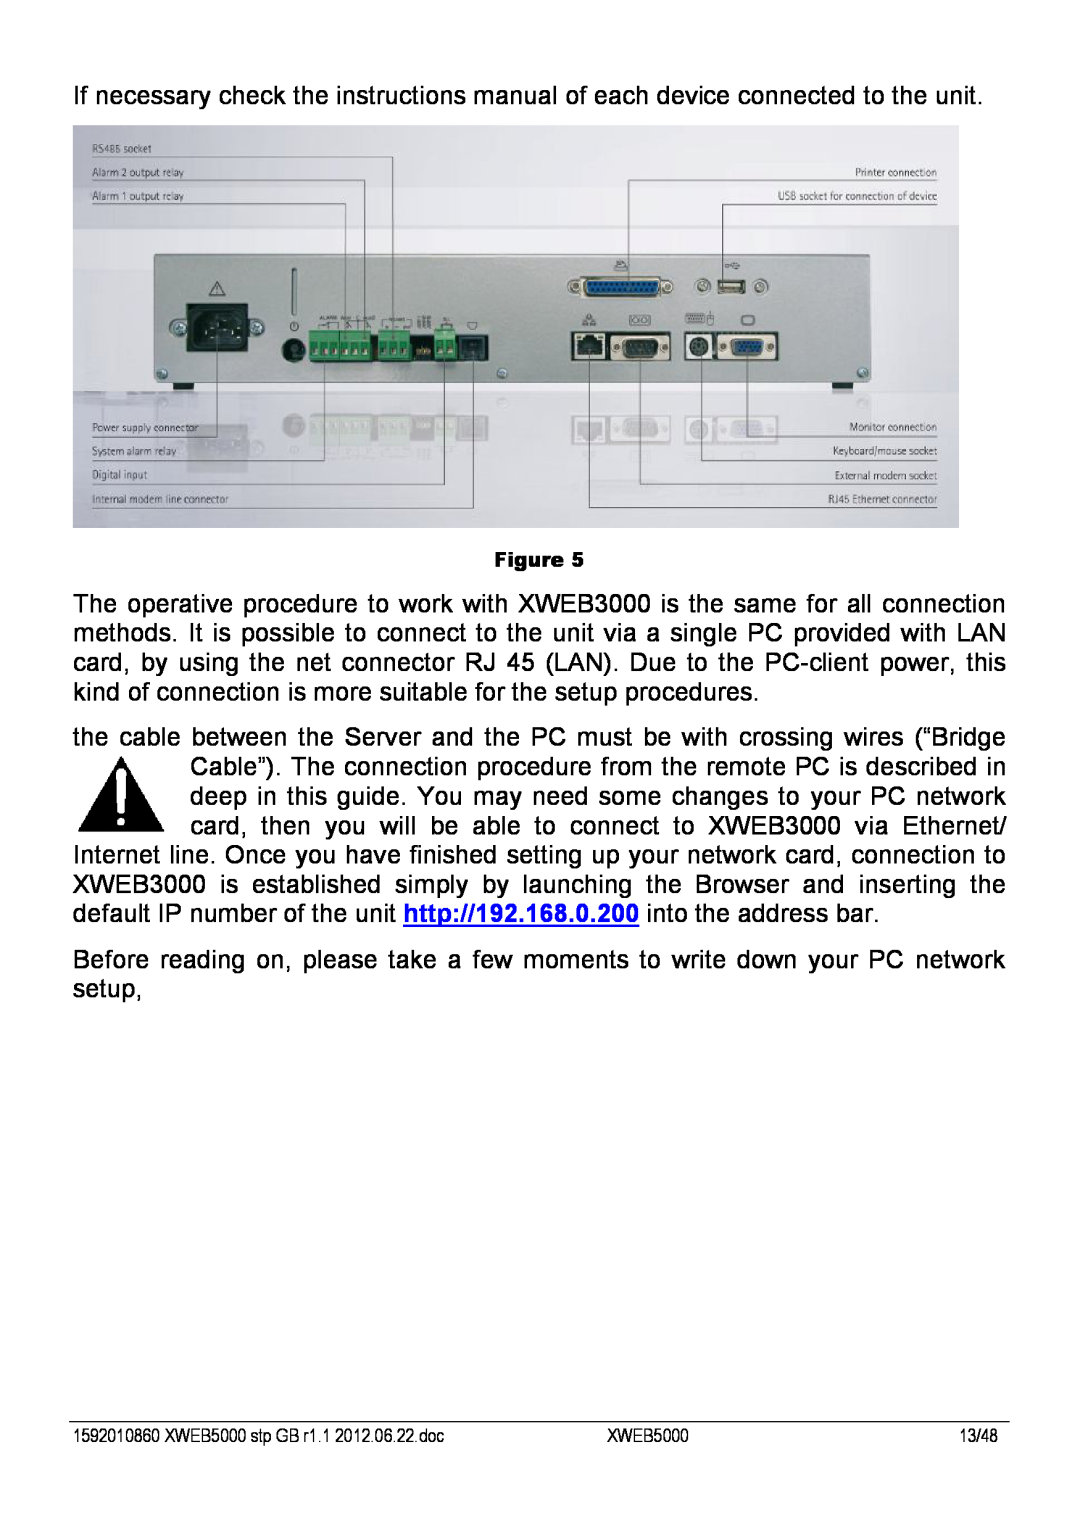 Emerson manual XWEB5000 stp GB r1.1 2012.06.22.doc, 13/48 